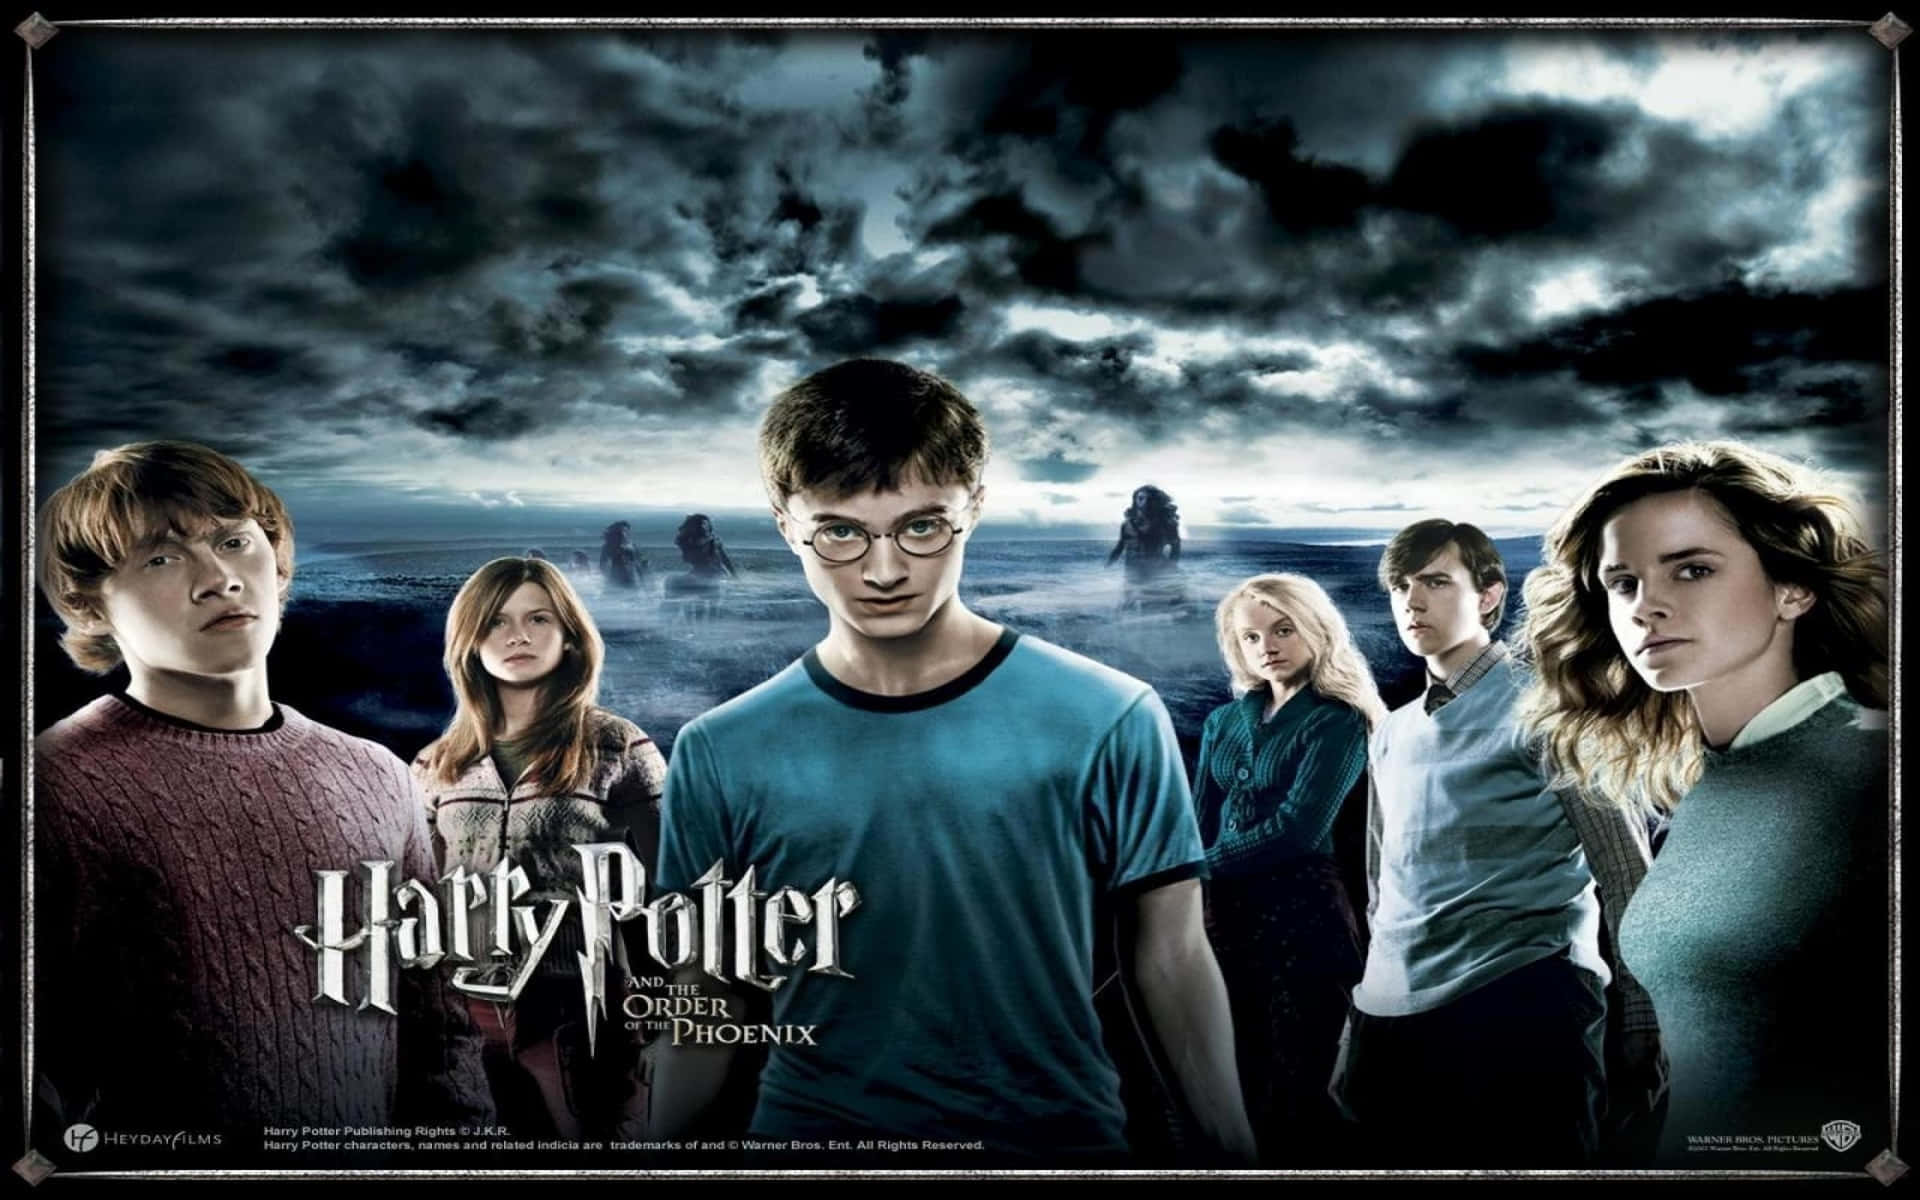 !Fejr 20 års jubilæum af Harry Potter - Alle karakterer sammen! Wallpaper